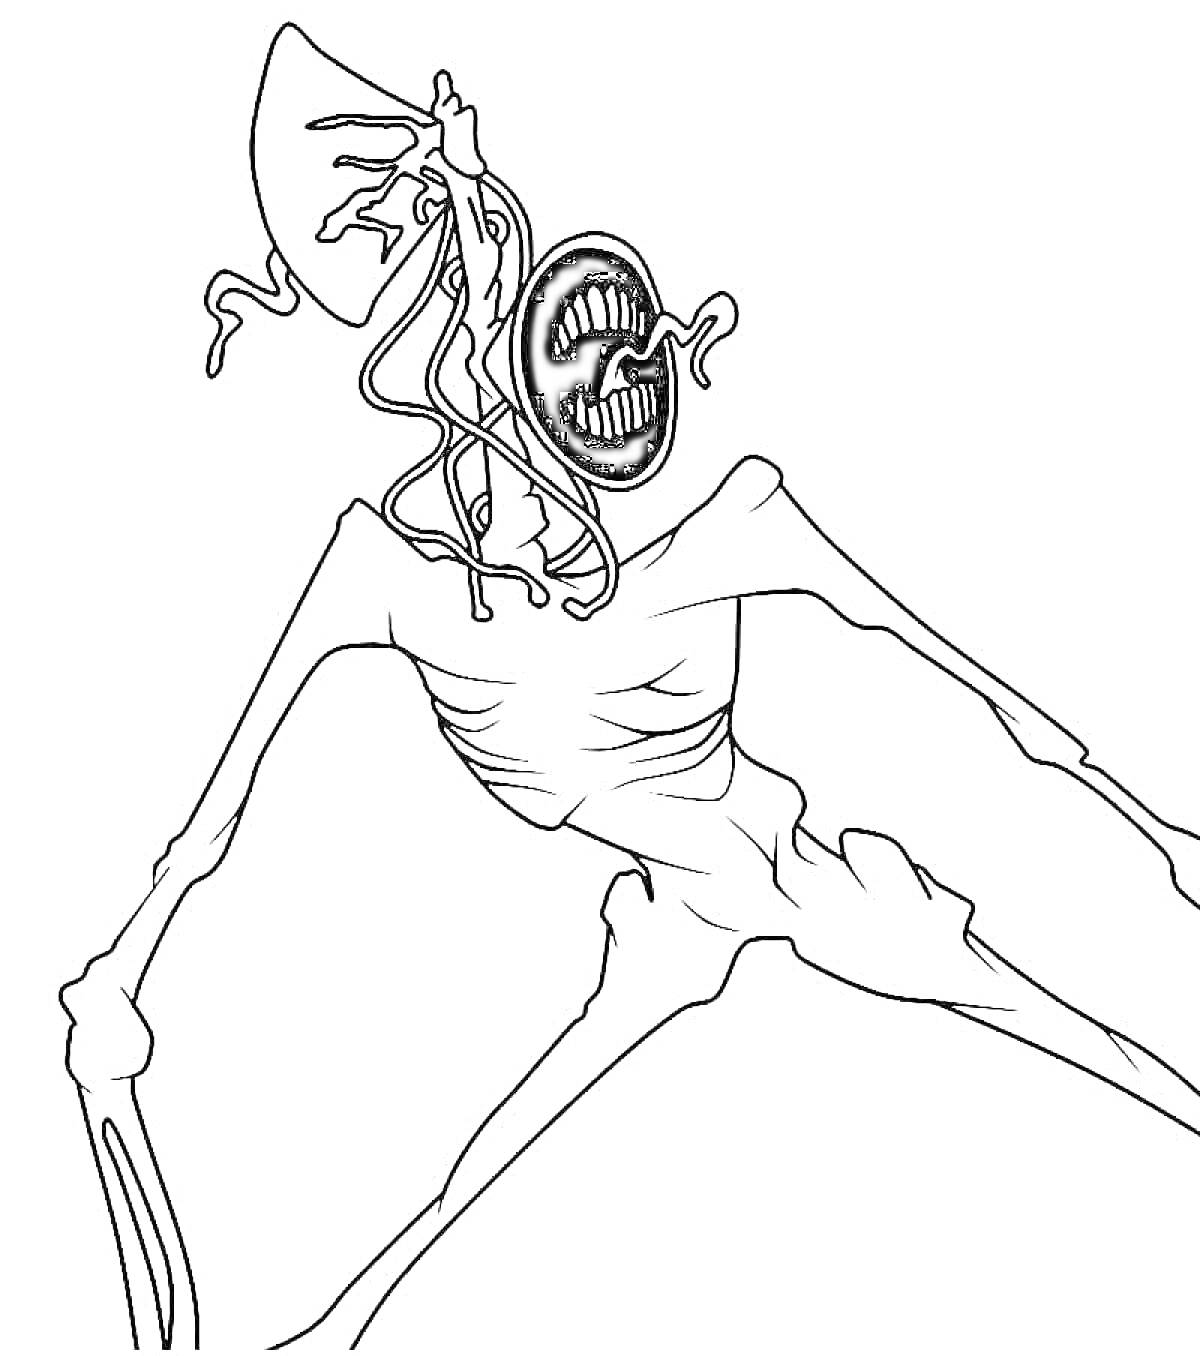 Раскраска Сиреноголовый с длинными конечностями и анатомическими особенностями туловища, наличие сирены и зловещих элементов